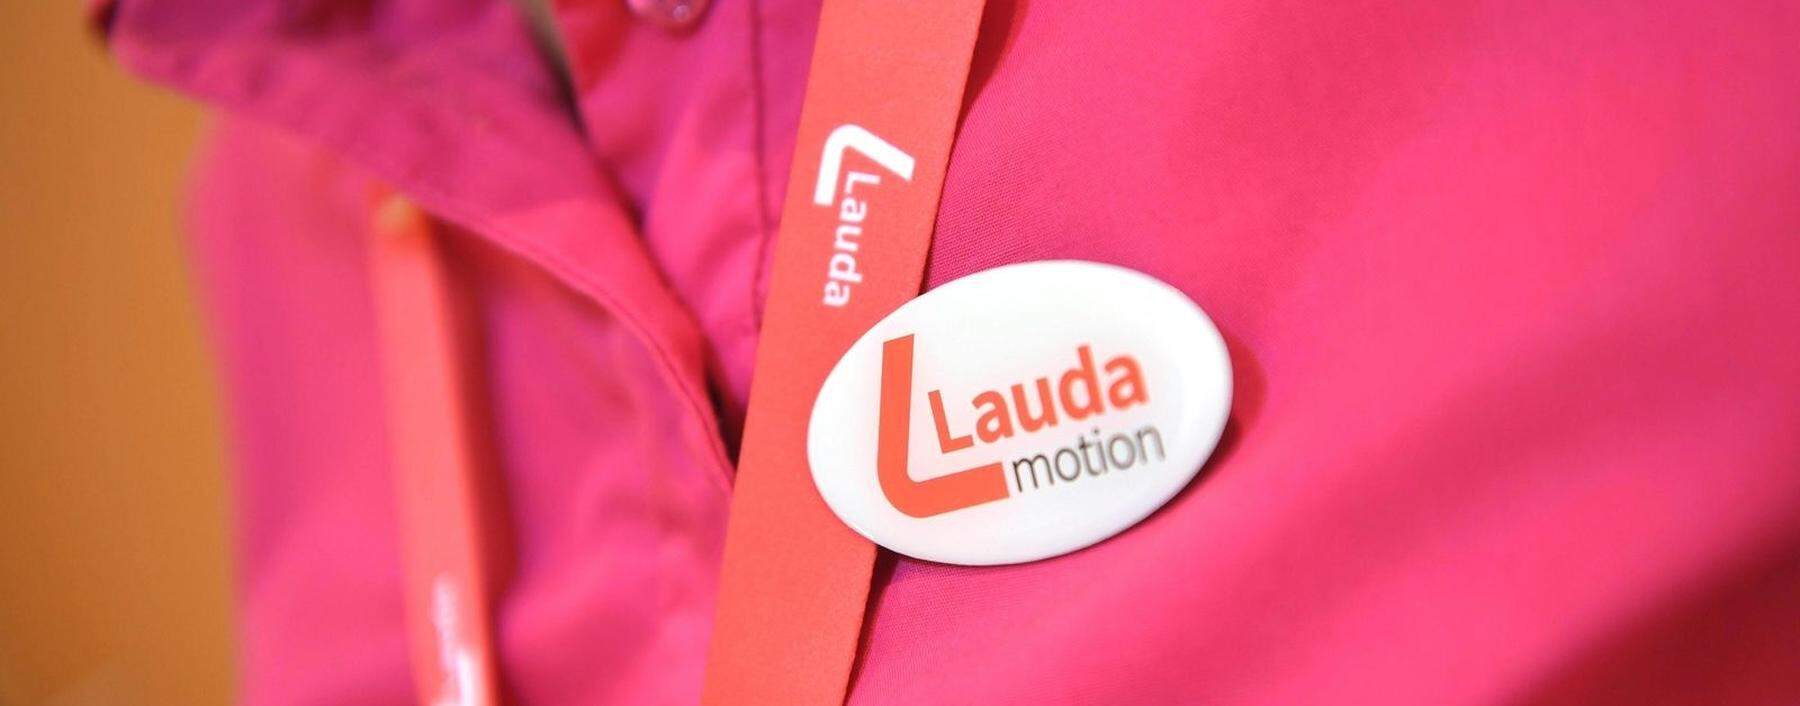 Das Logo von Laudamotion